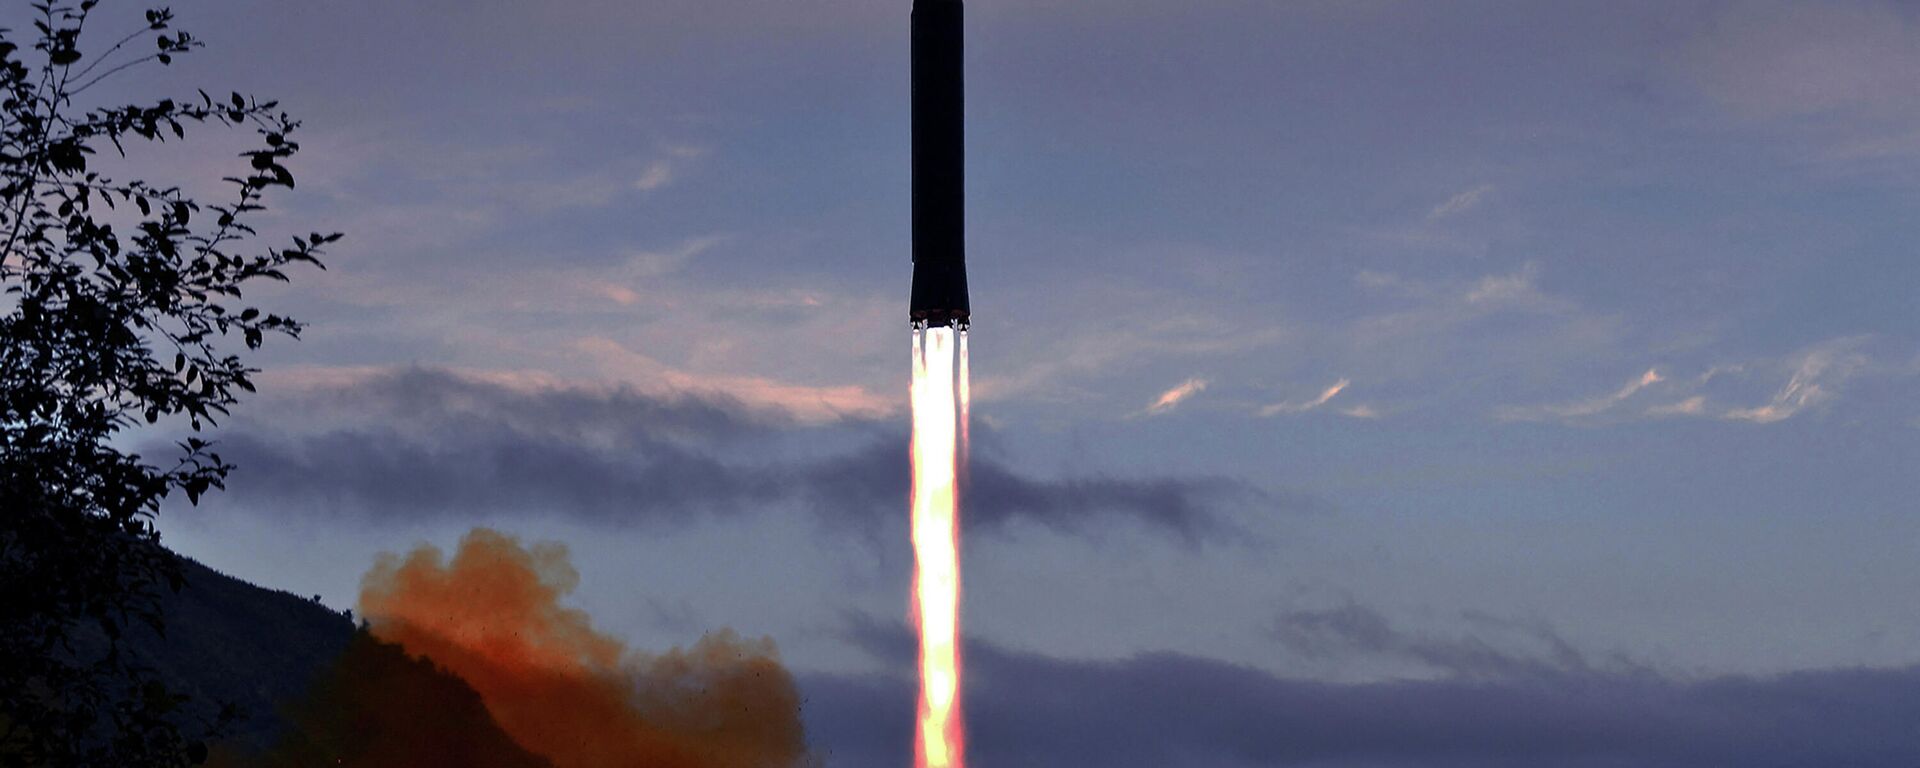 Foto de 28 de setembro de 2021, divulgada pela Agência Central de Notícias da Coreia (KCNA, na sigla em inglês), mostra o teste de um míssil hipersônico Hwasong-8 na província de Jagang, na Coreia do Norte - Sputnik Brasil, 1920, 06.02.2022